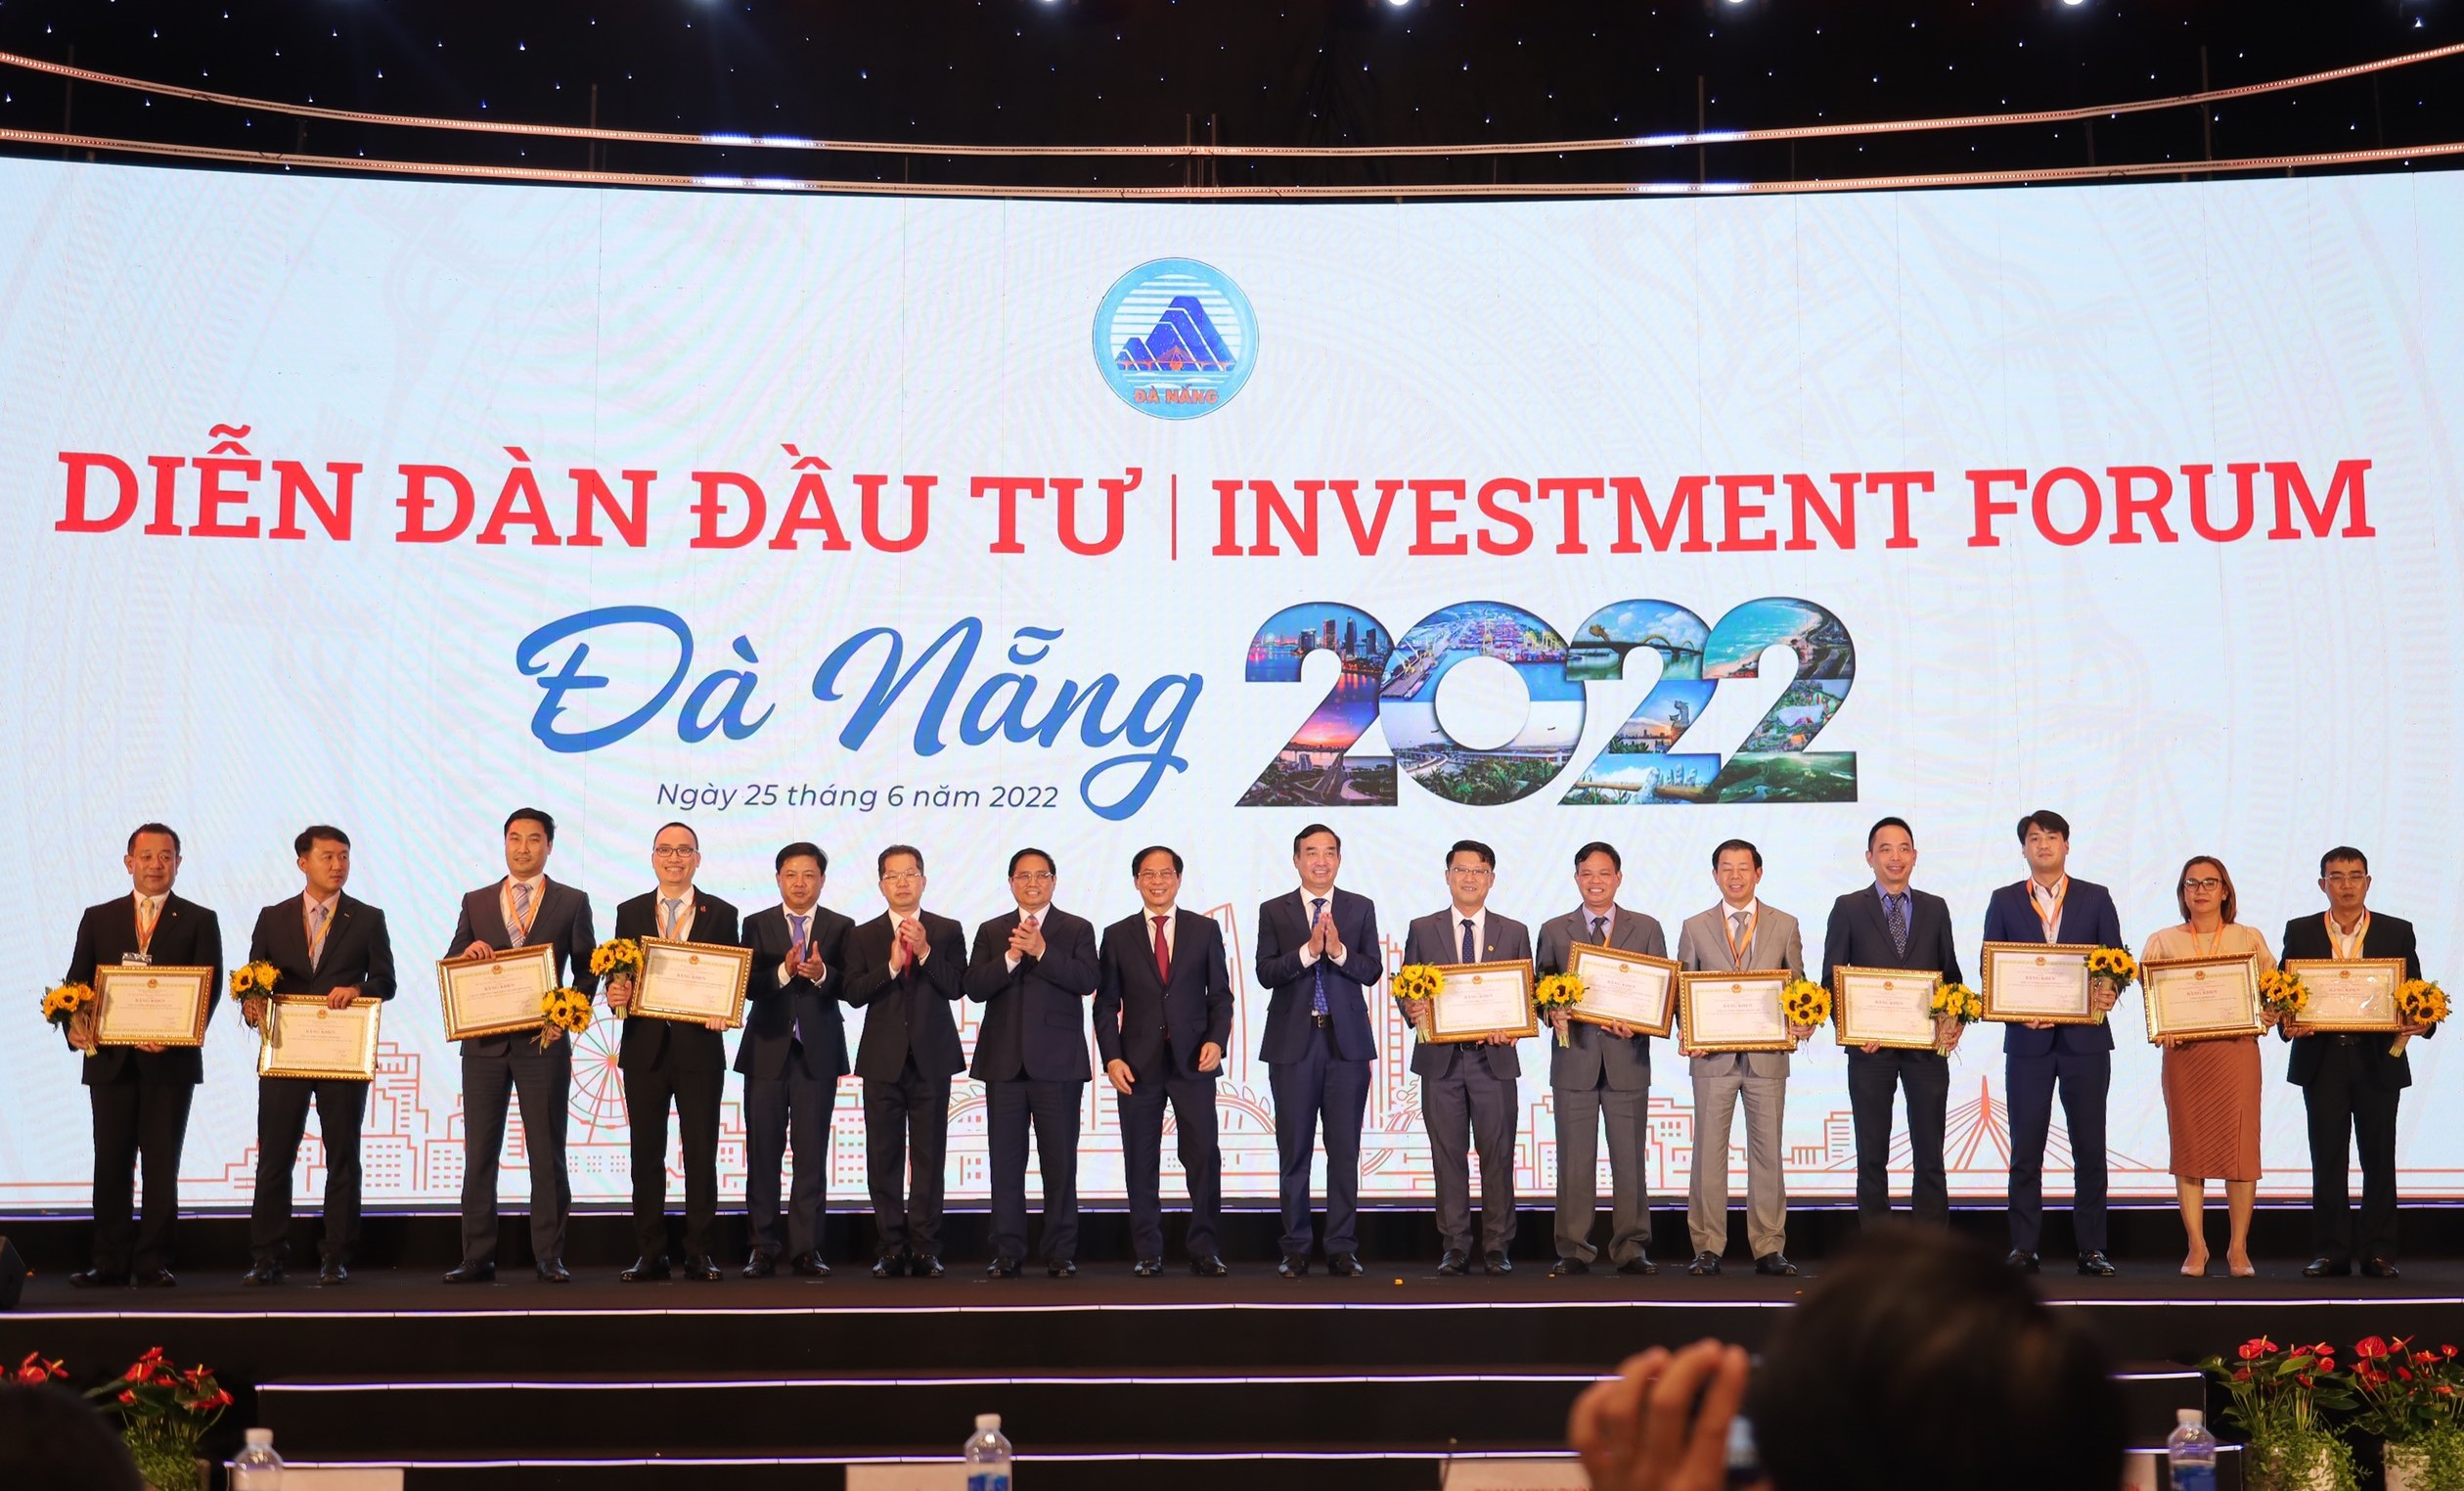 Diễn đàn đầu tư Đà Nẵng 2022 đã cấp chứng nhận đầu tư cho nhiều Dự án.